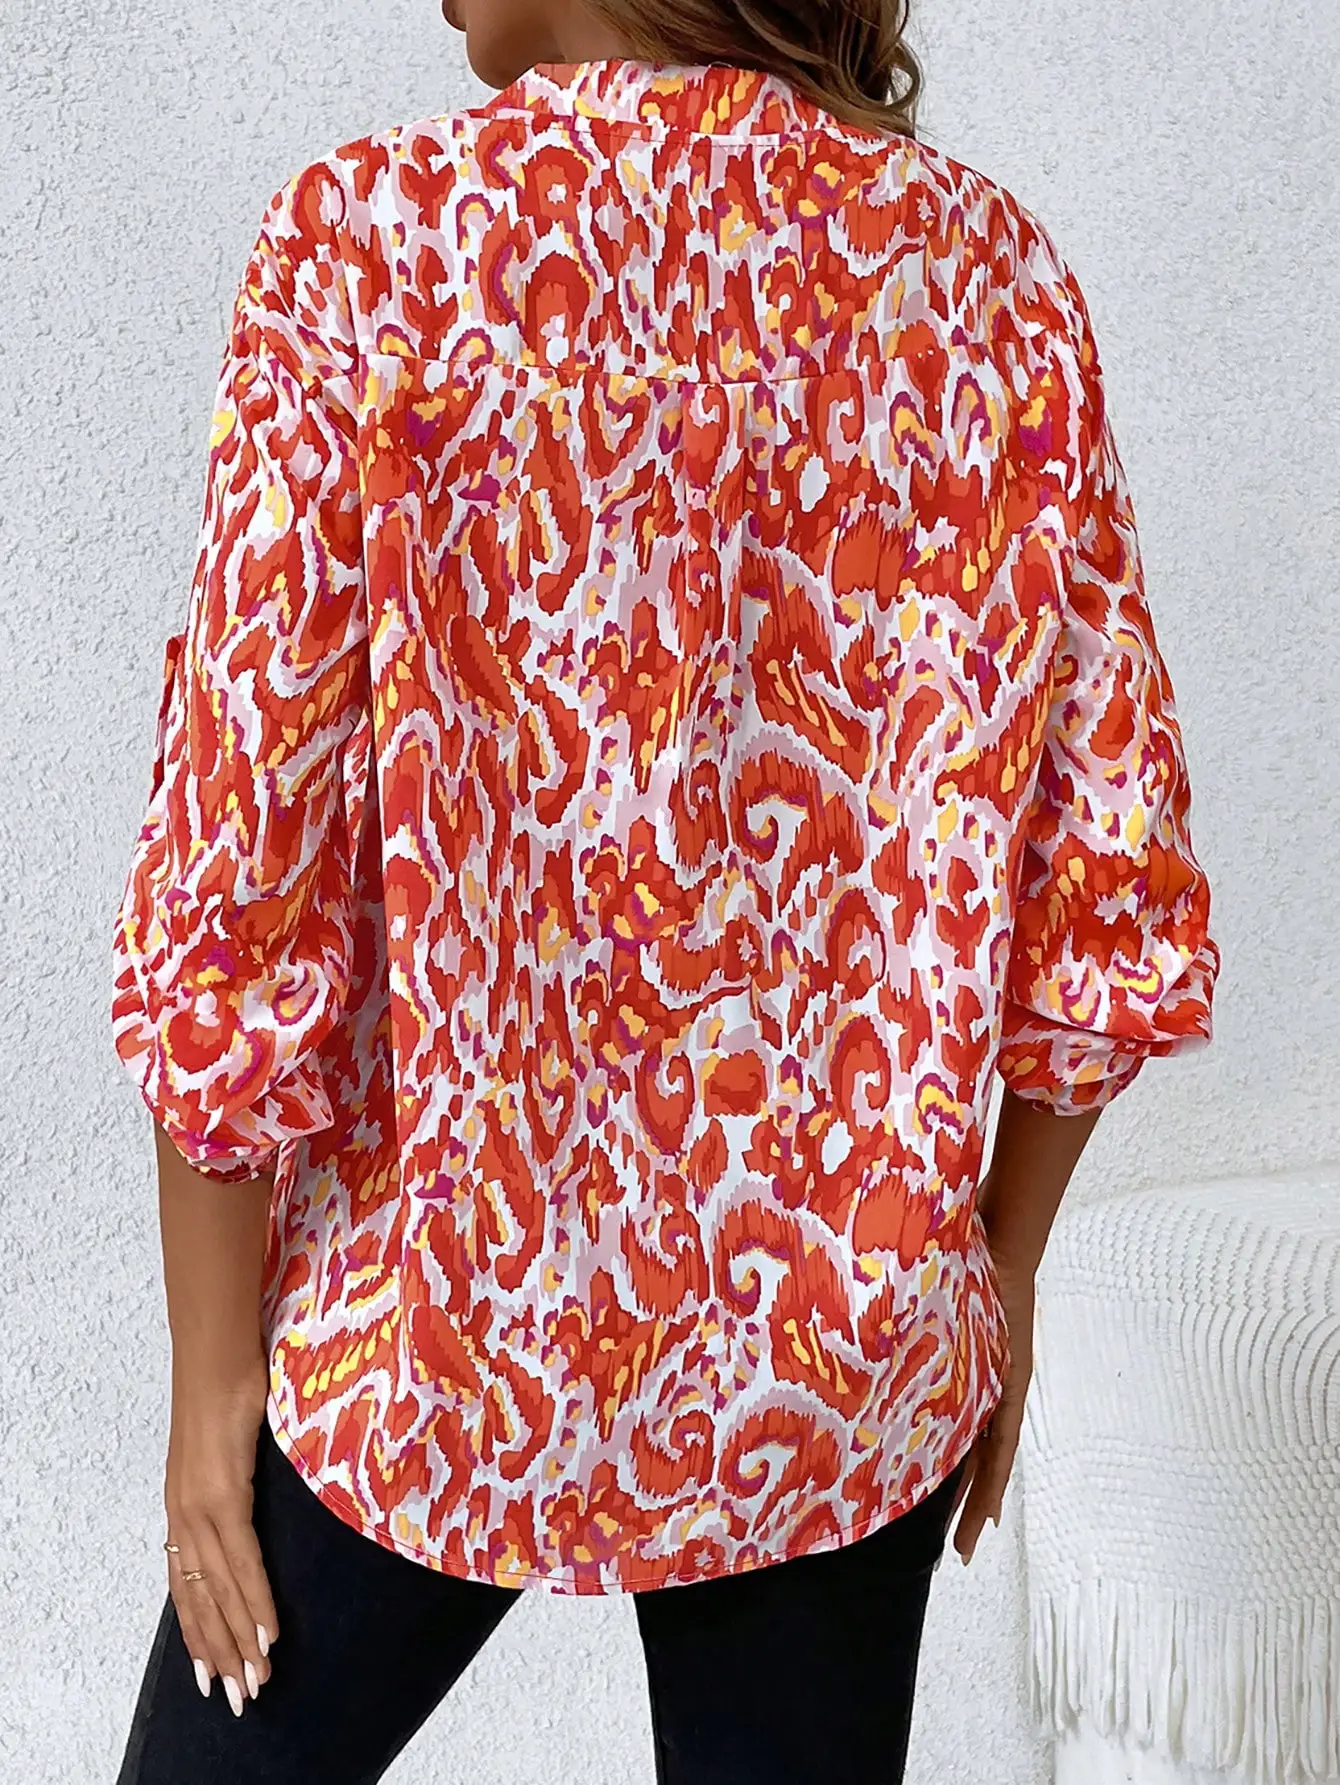 

Essnce Allover рулон печати блузка с рукавом с язычком для ежедневных покупок и одевания, Летний стиль для пляжного отдыха